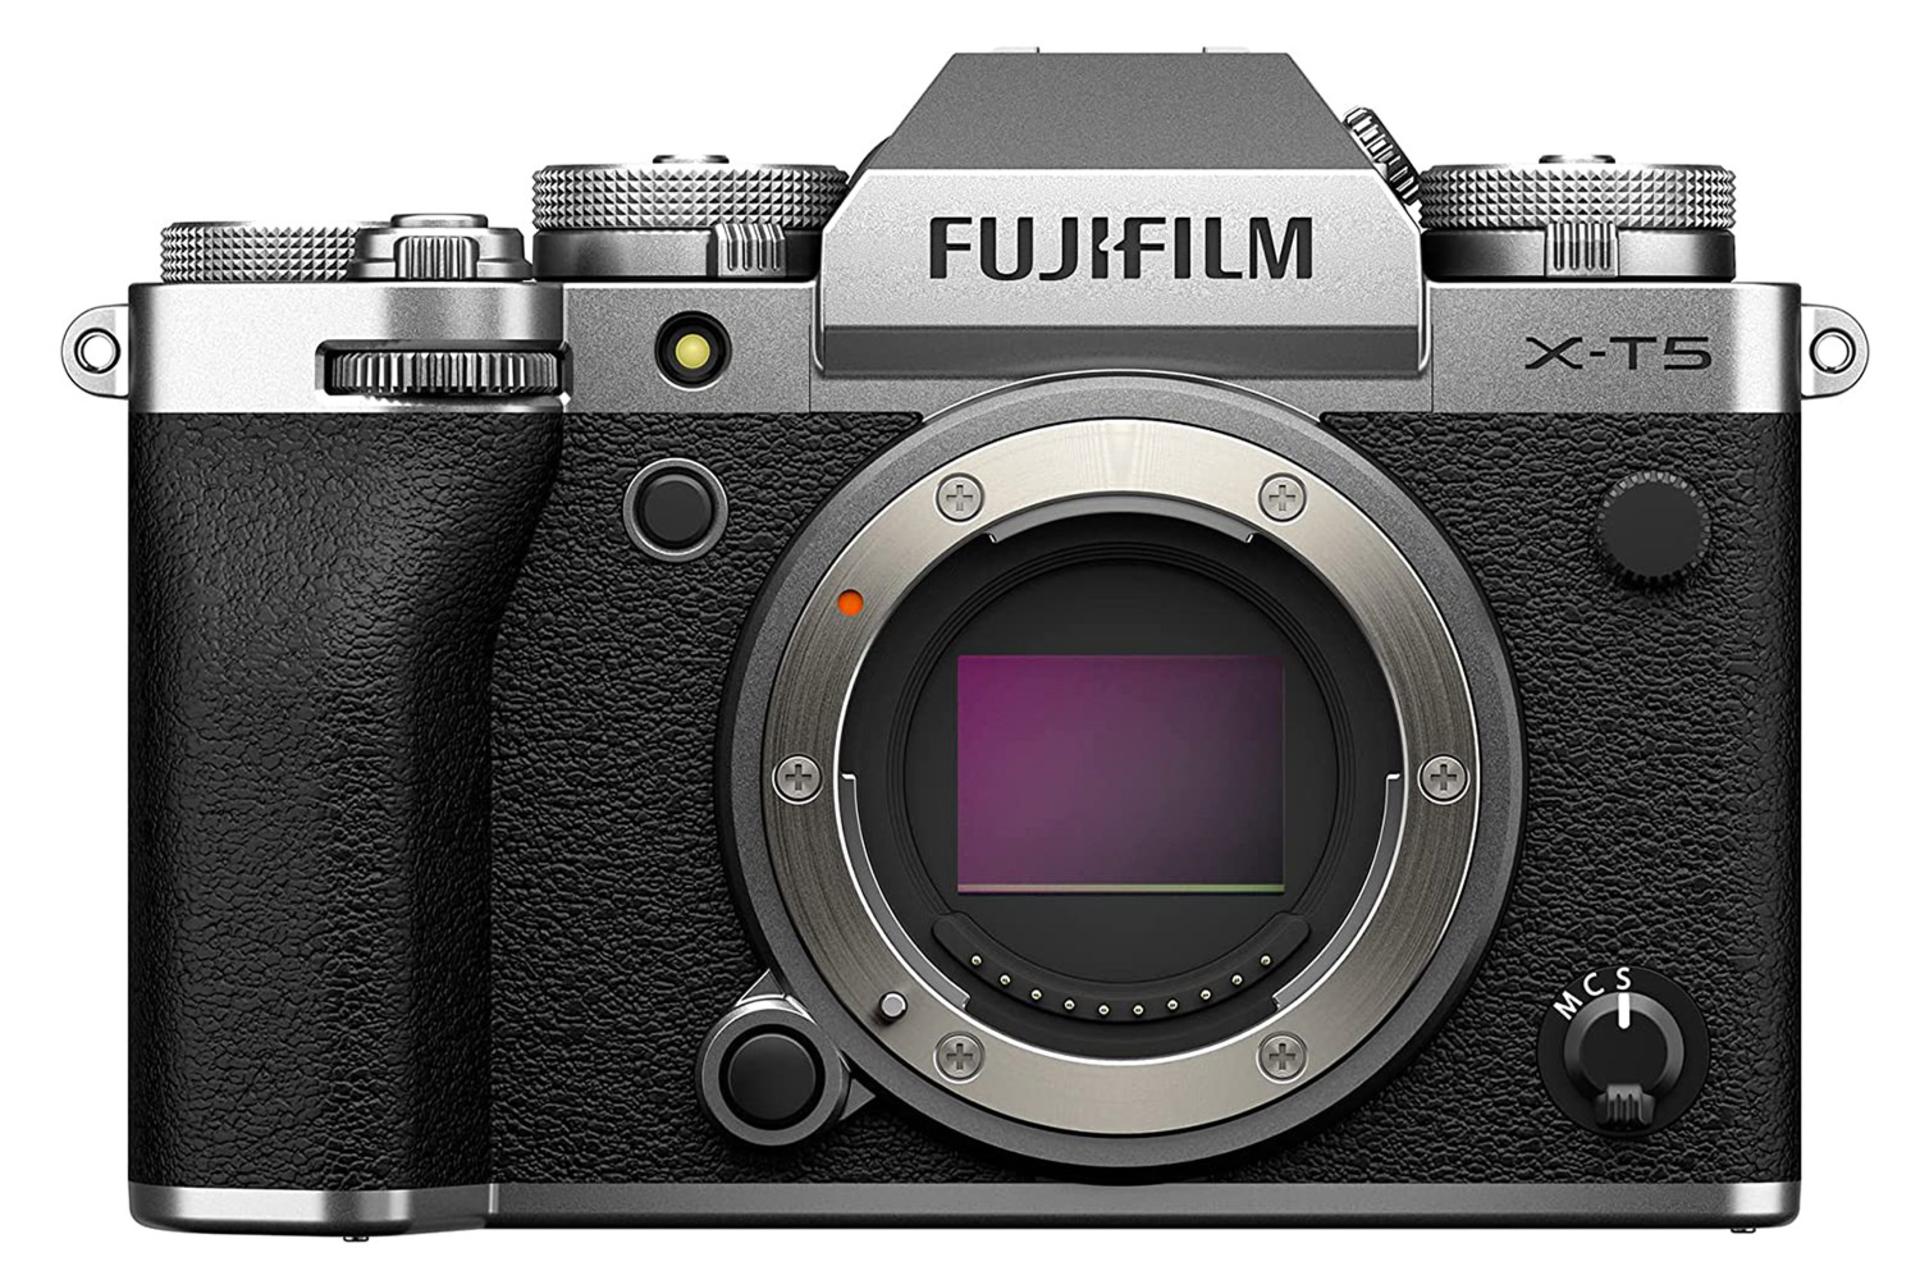 مرجع متخصصين ايران دوربين فوجي فيلم Fujifilm X-T5